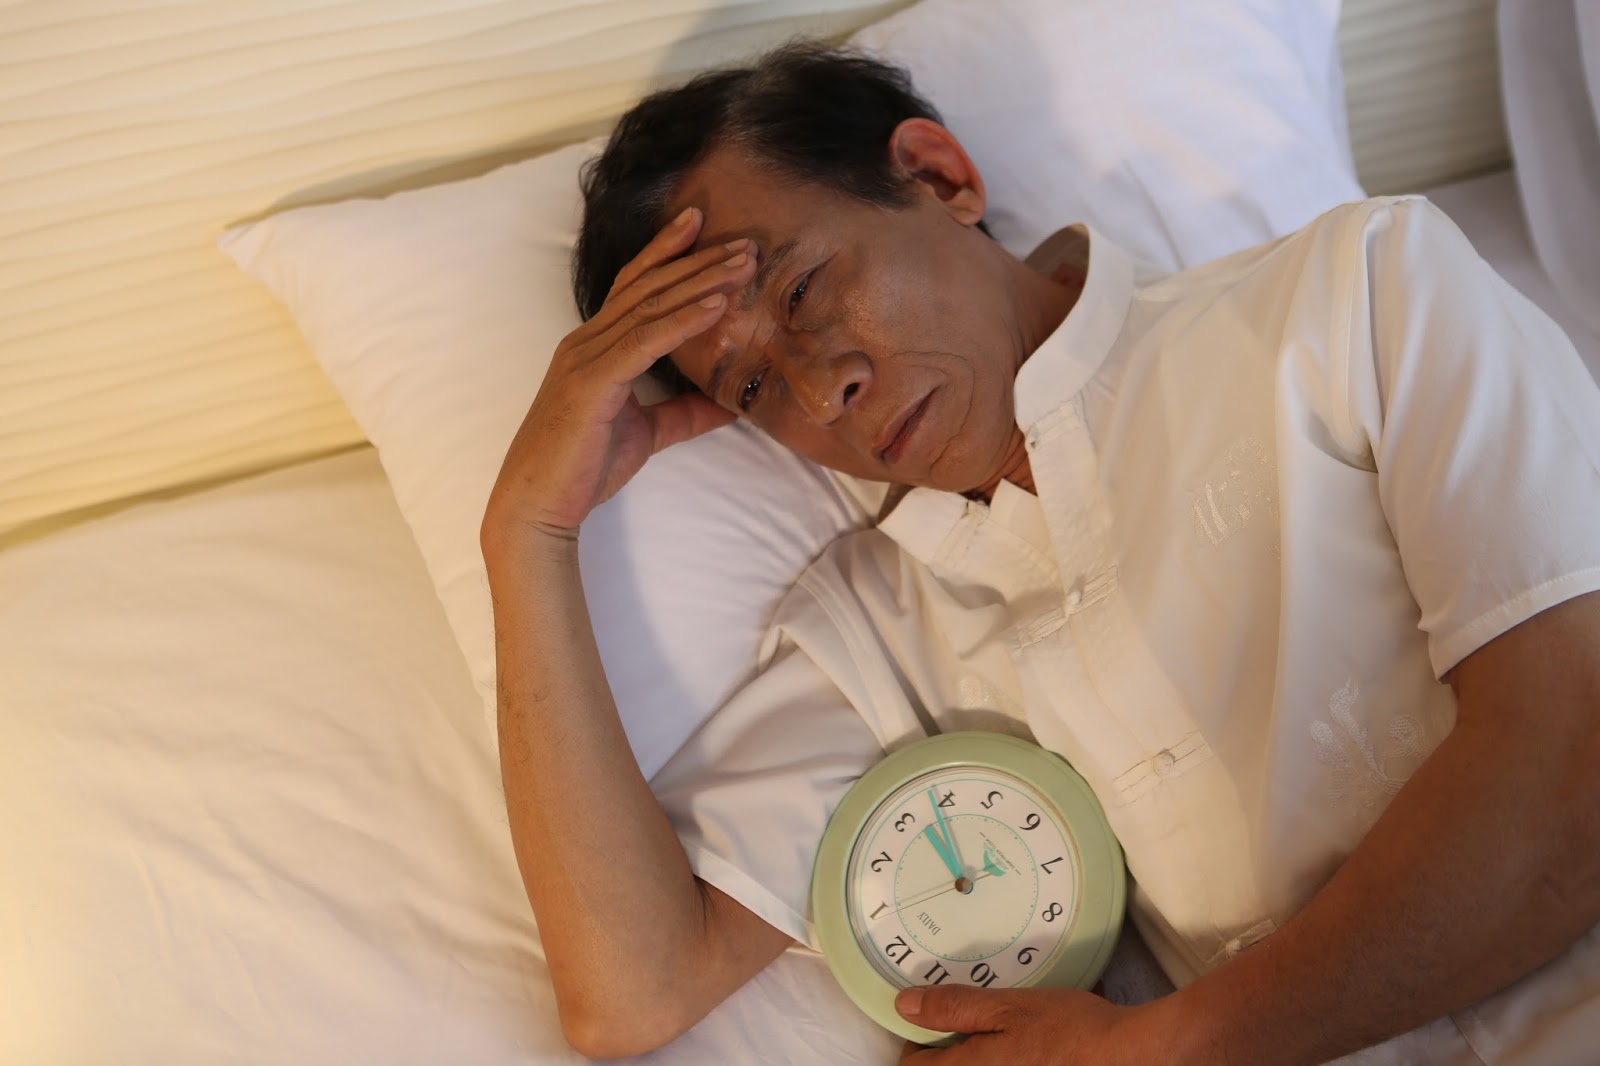 Biểu hiện và triệu chứng nhận biết của bệnh mất ngủ ở người già